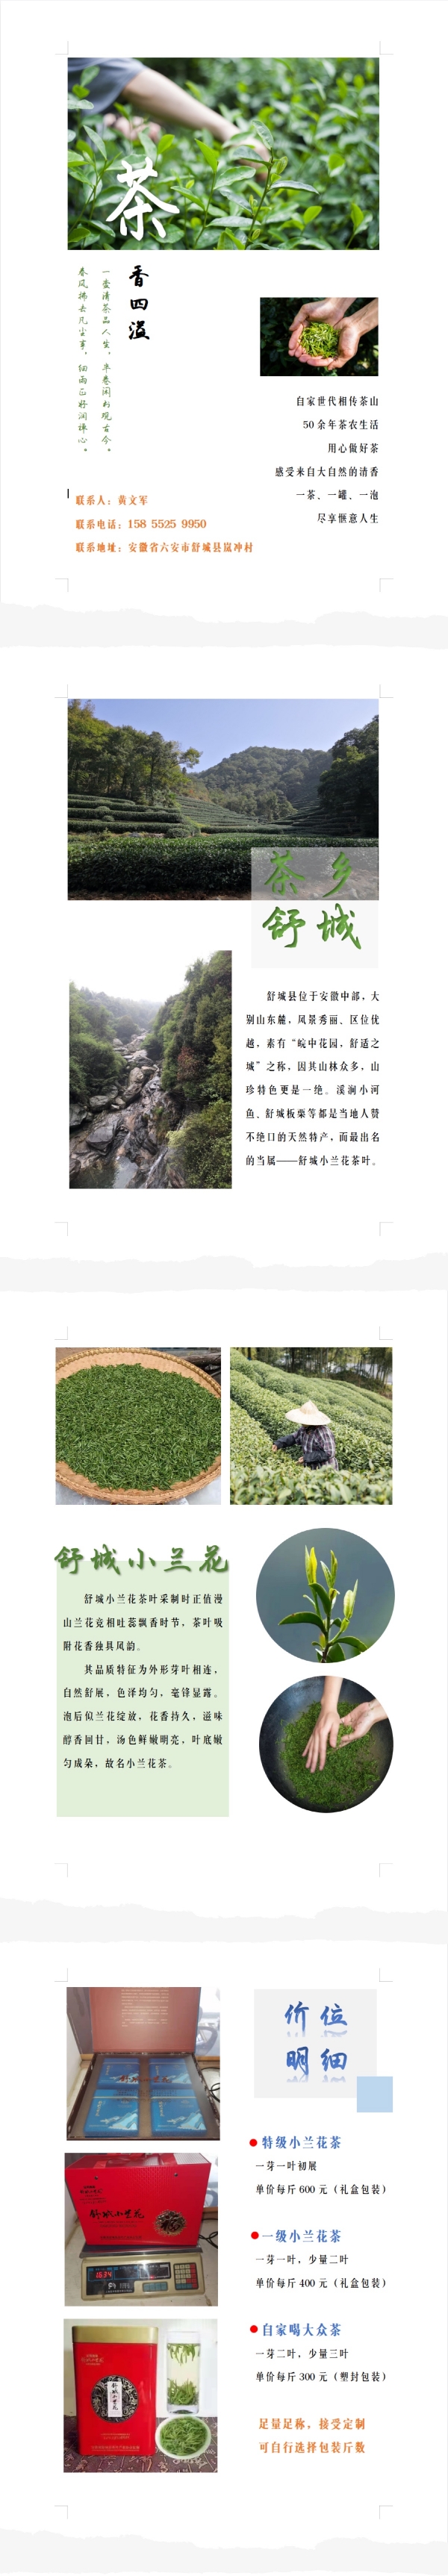 舒城县小兰花一级每斤500元，大众茶每斤280元。